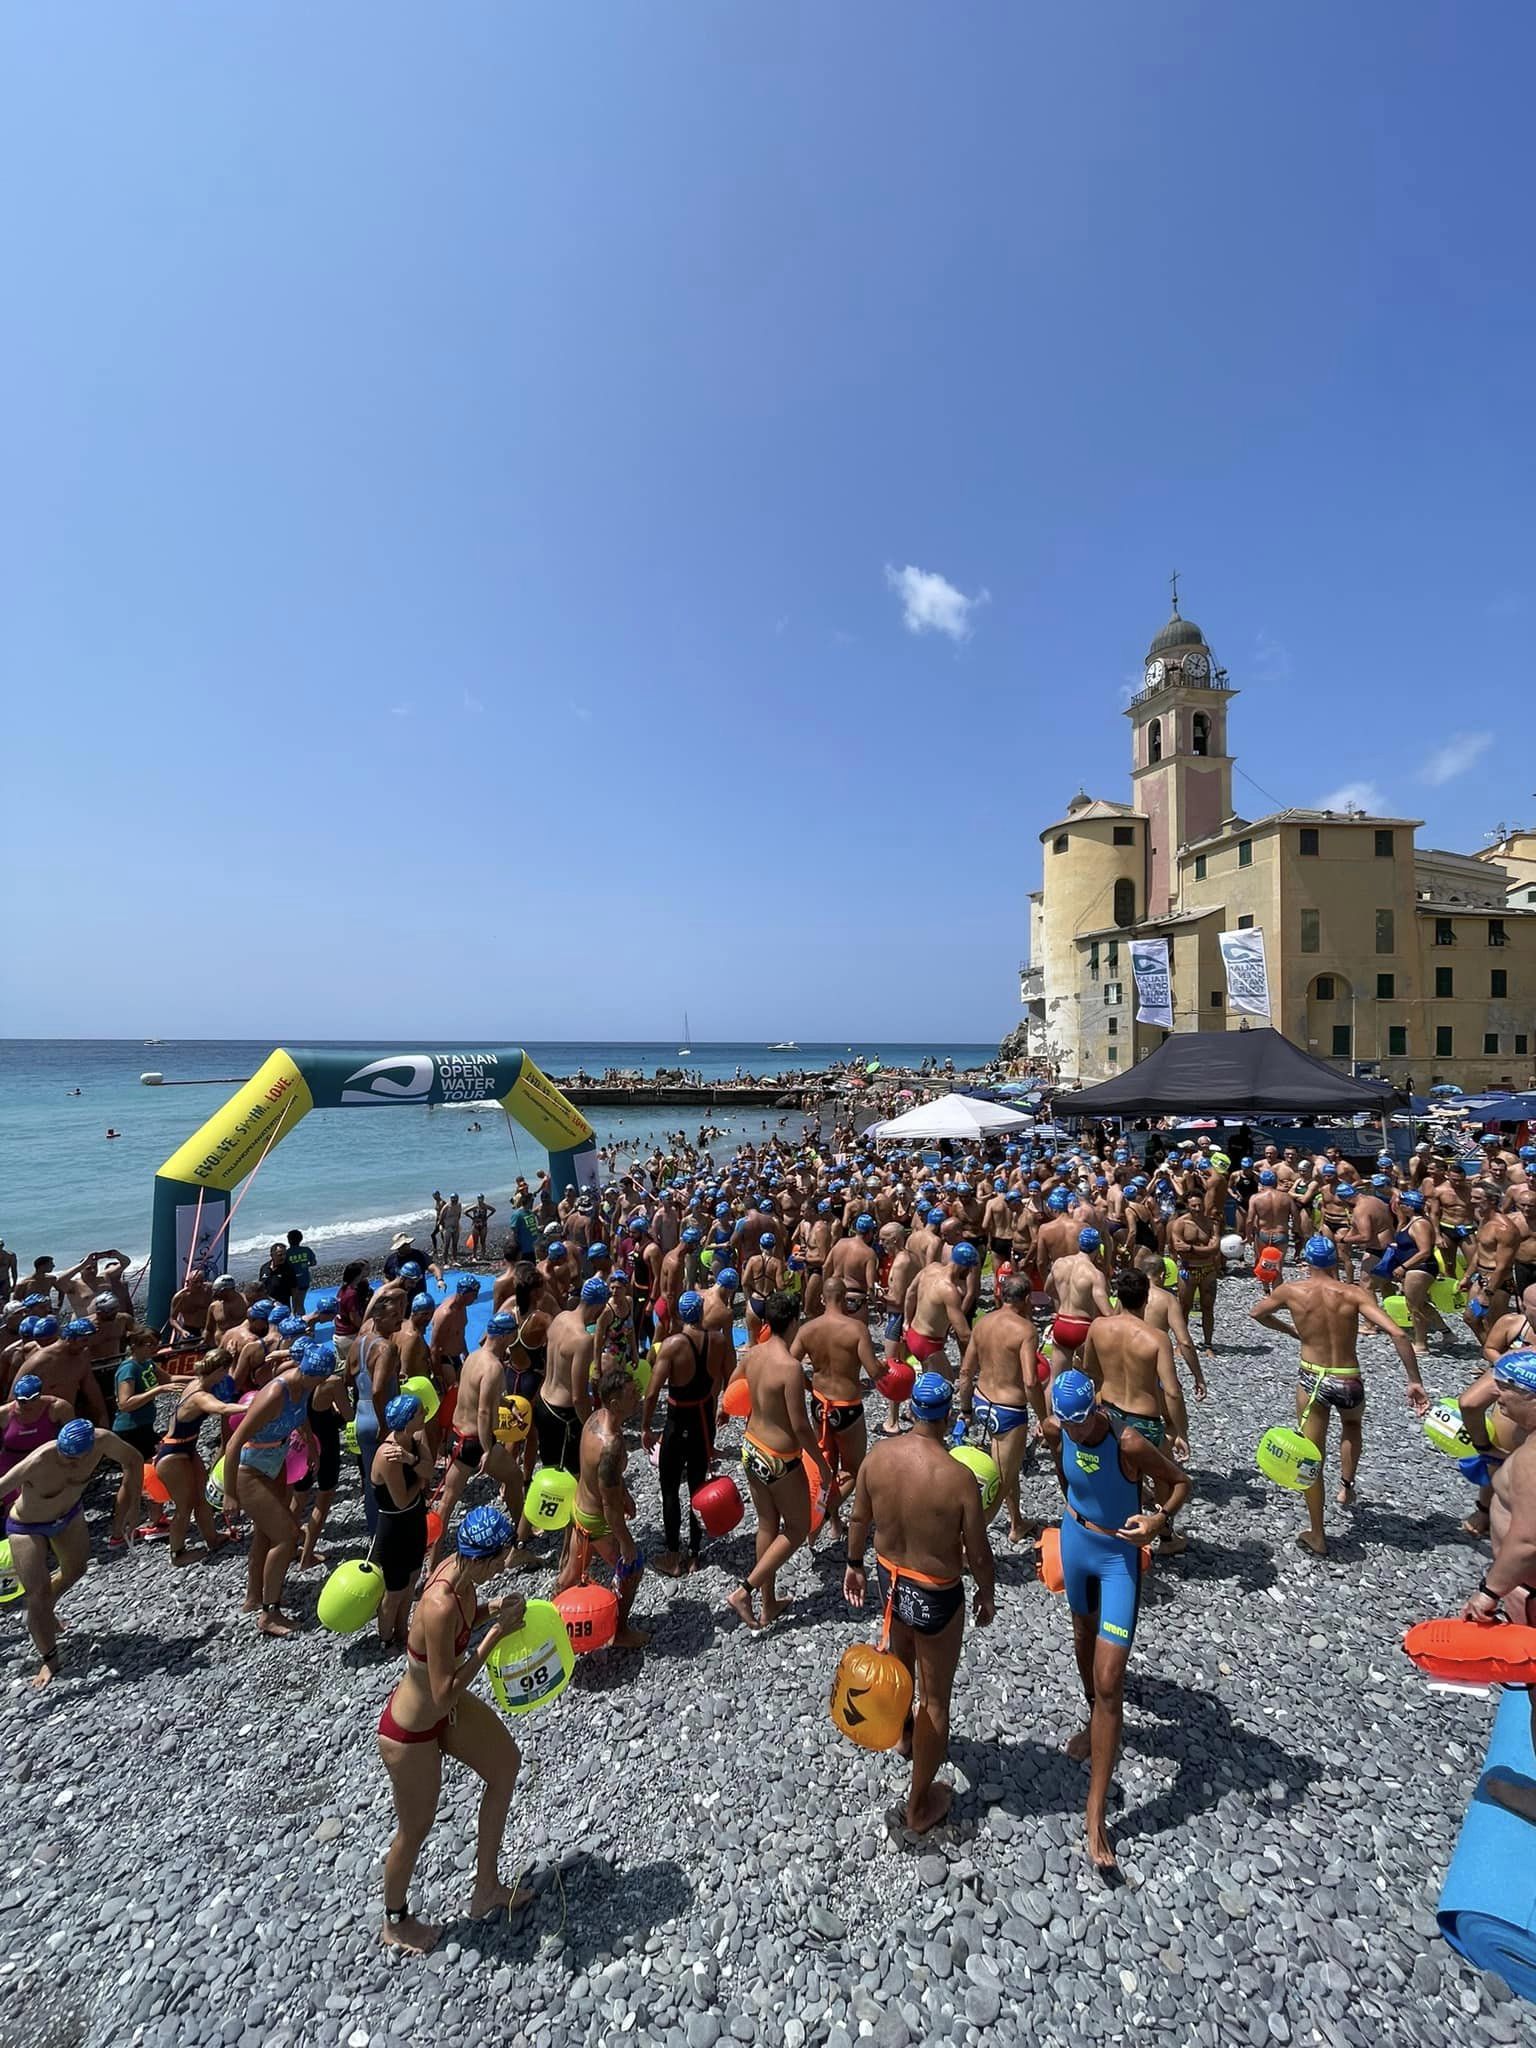 Italia Open Water Tour - Baratti Relay Swim 1/2 miglio Marino x 3